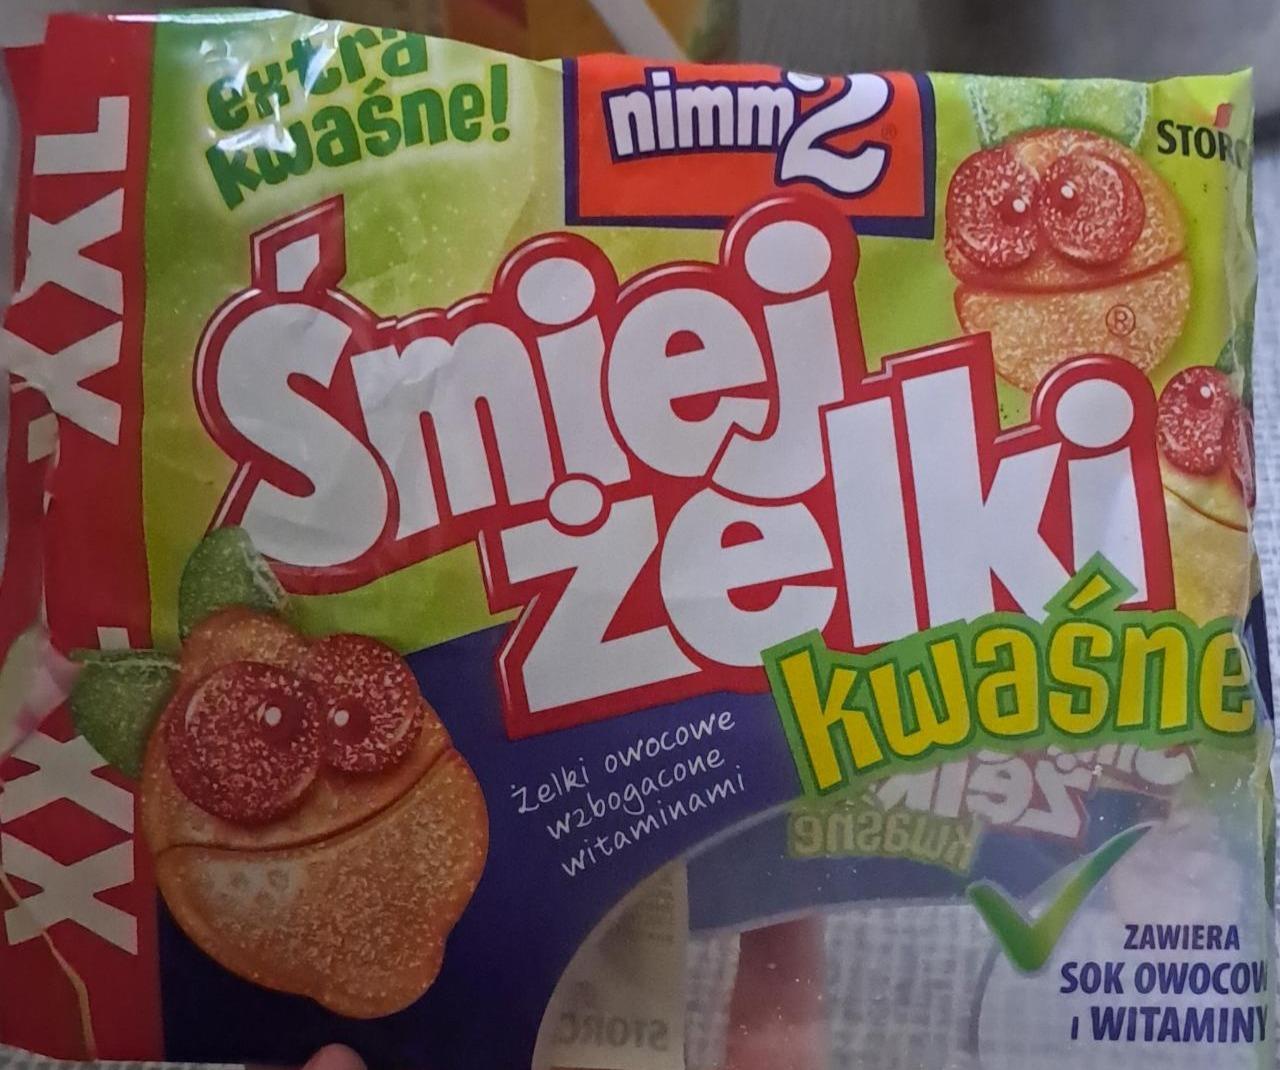 Фото - Конфеты жевательные кислые Smiej Zelki Nimm 2